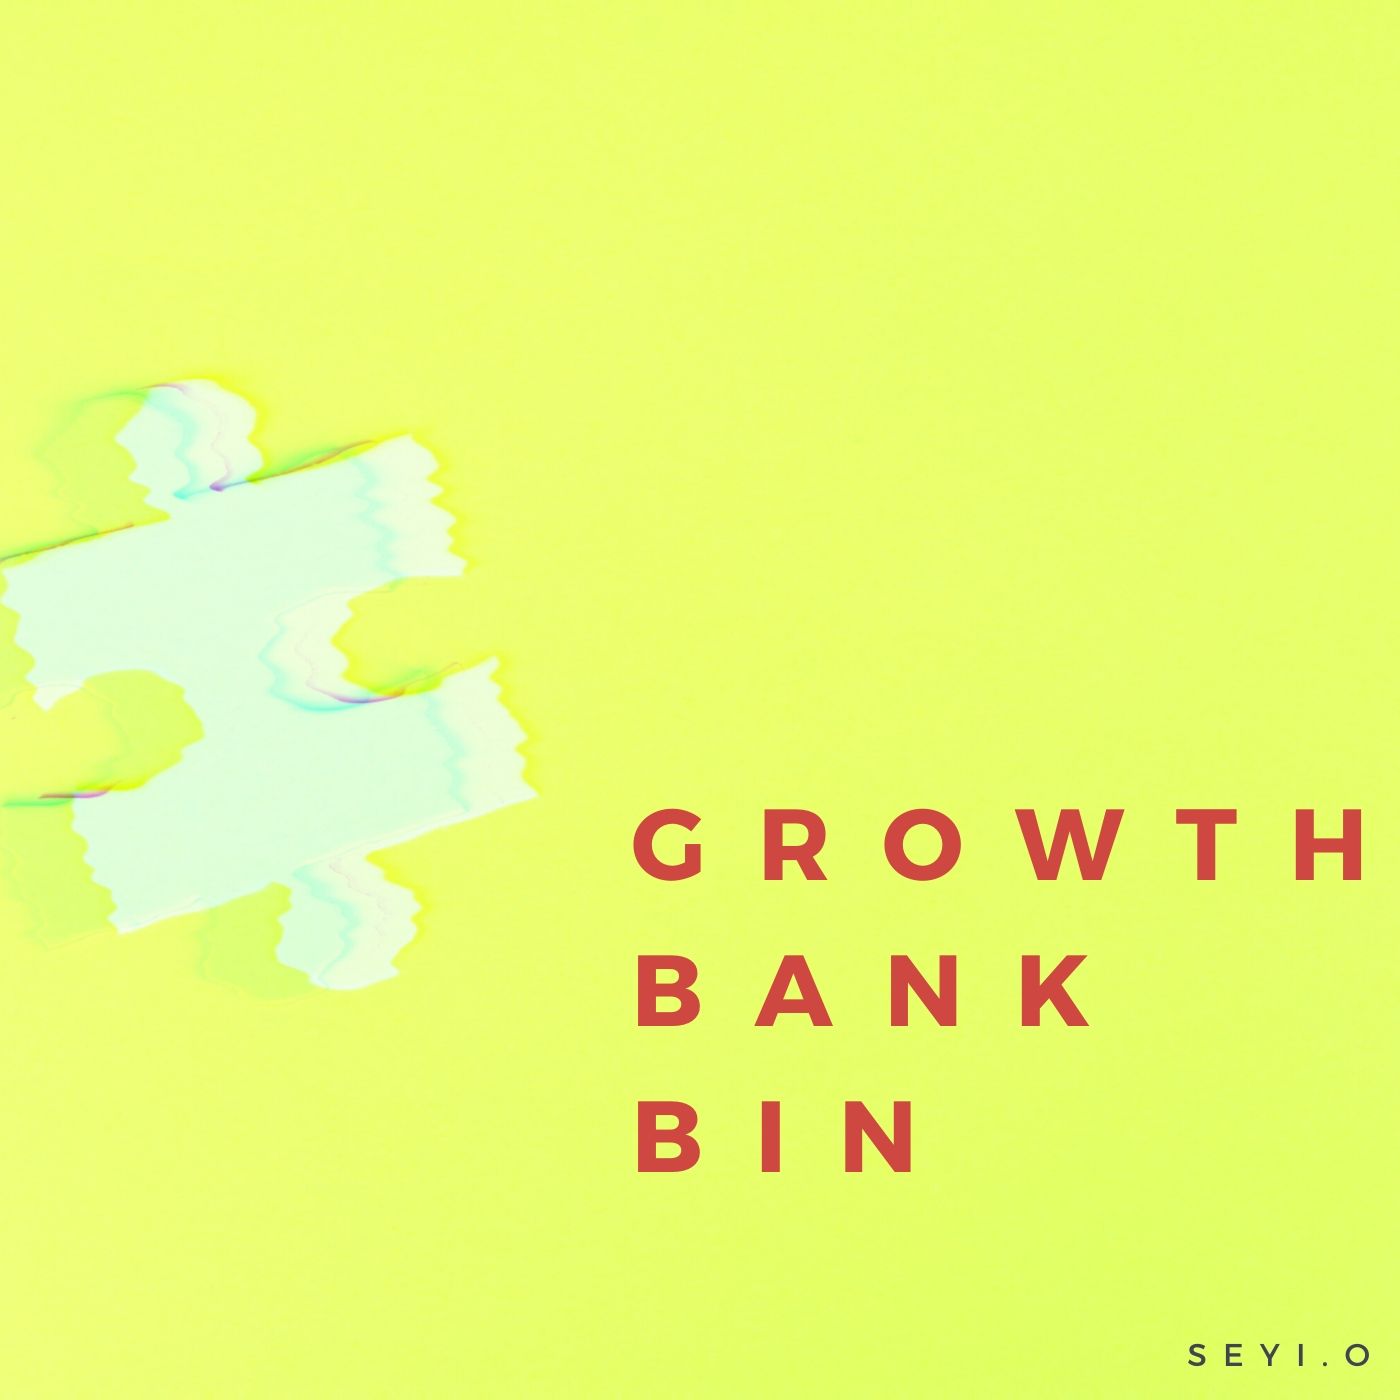 Growth Bank & Bin